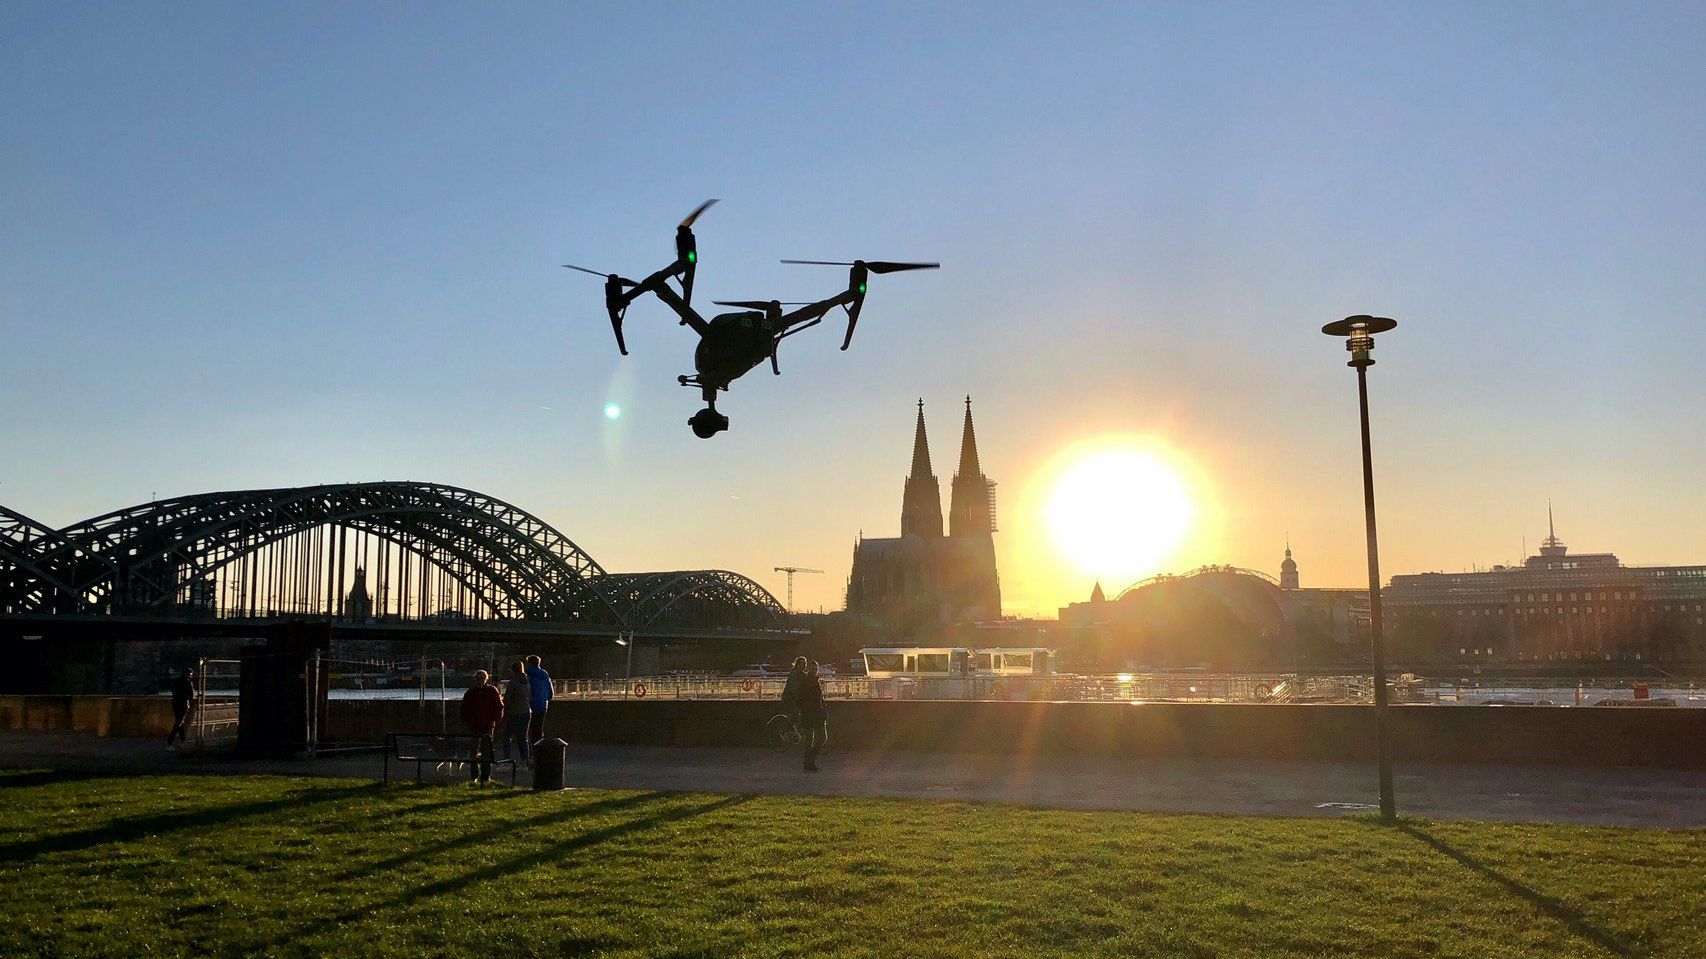 Filmdrohne fliegt im Sonnenuntergang auf Kölner Dom zu und macht Luftaufnahmen